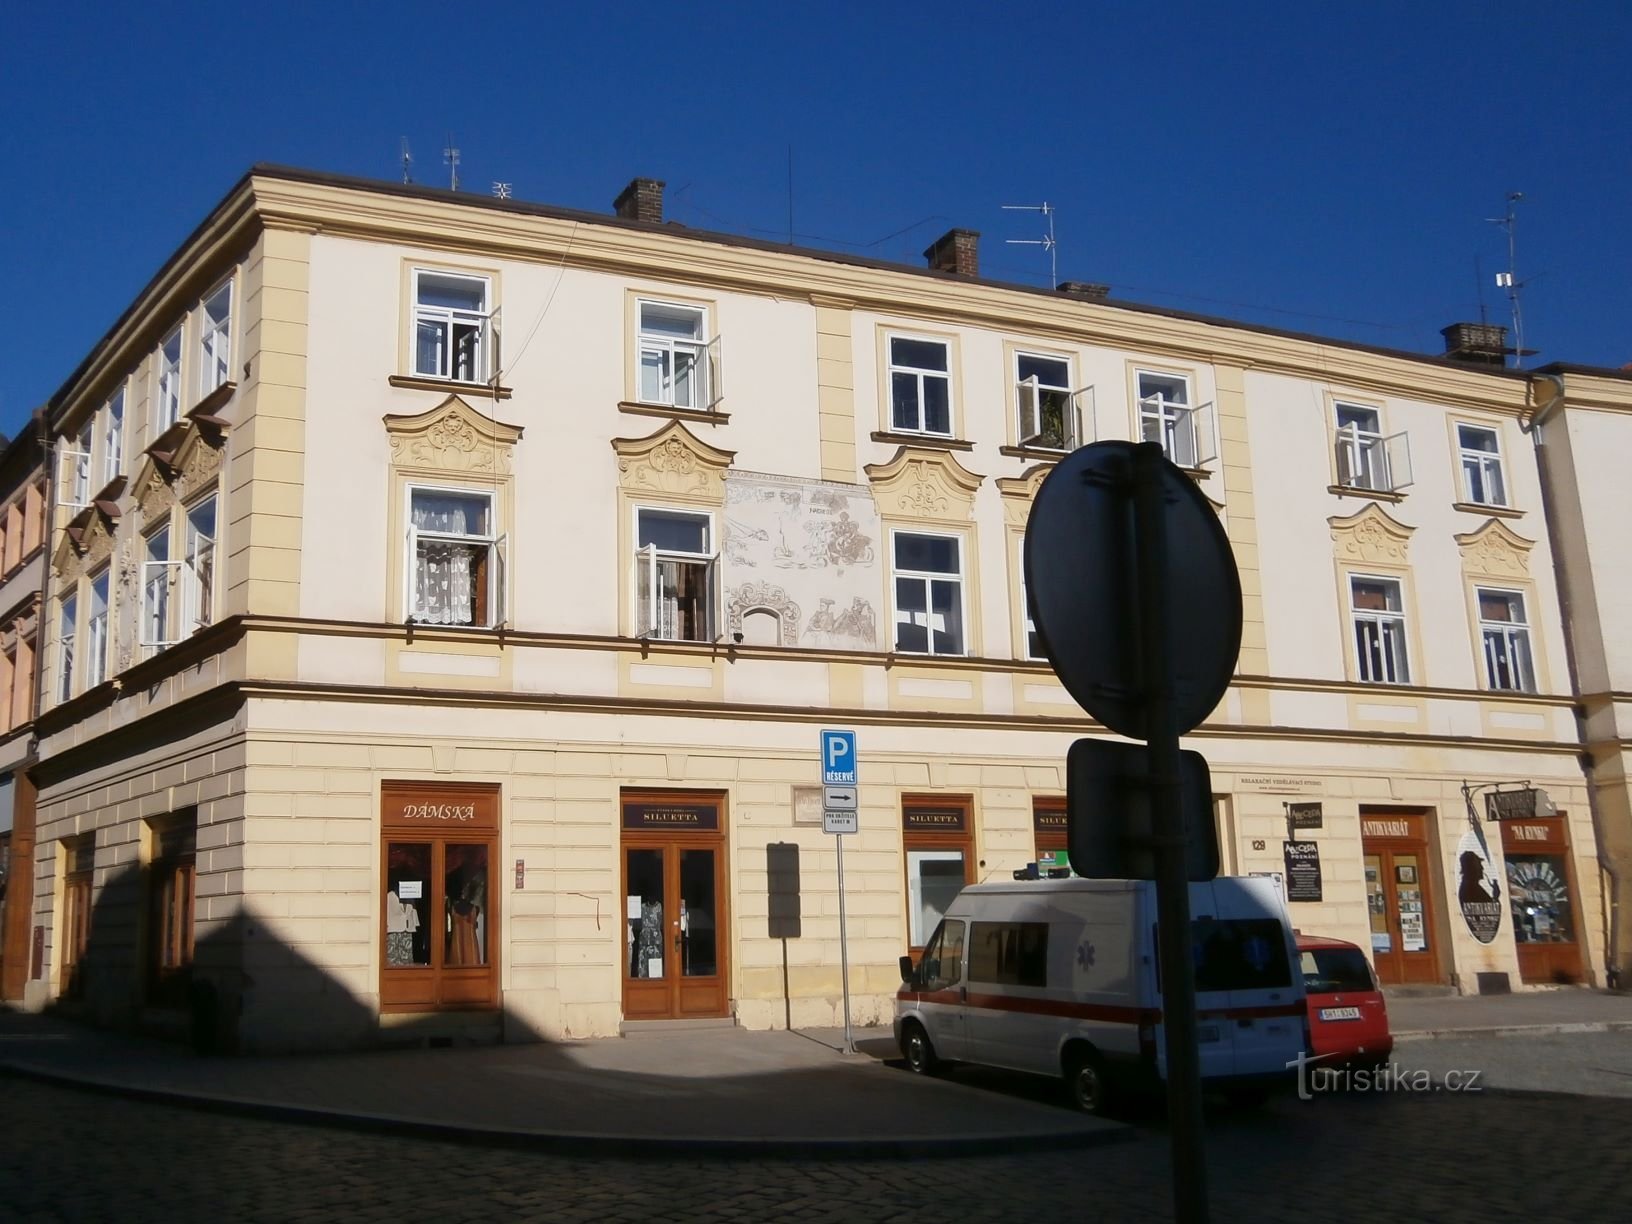 Malé náměstí no. 129 (Hradec Králové, 2.8.2013. huhtikuuta XNUMX)